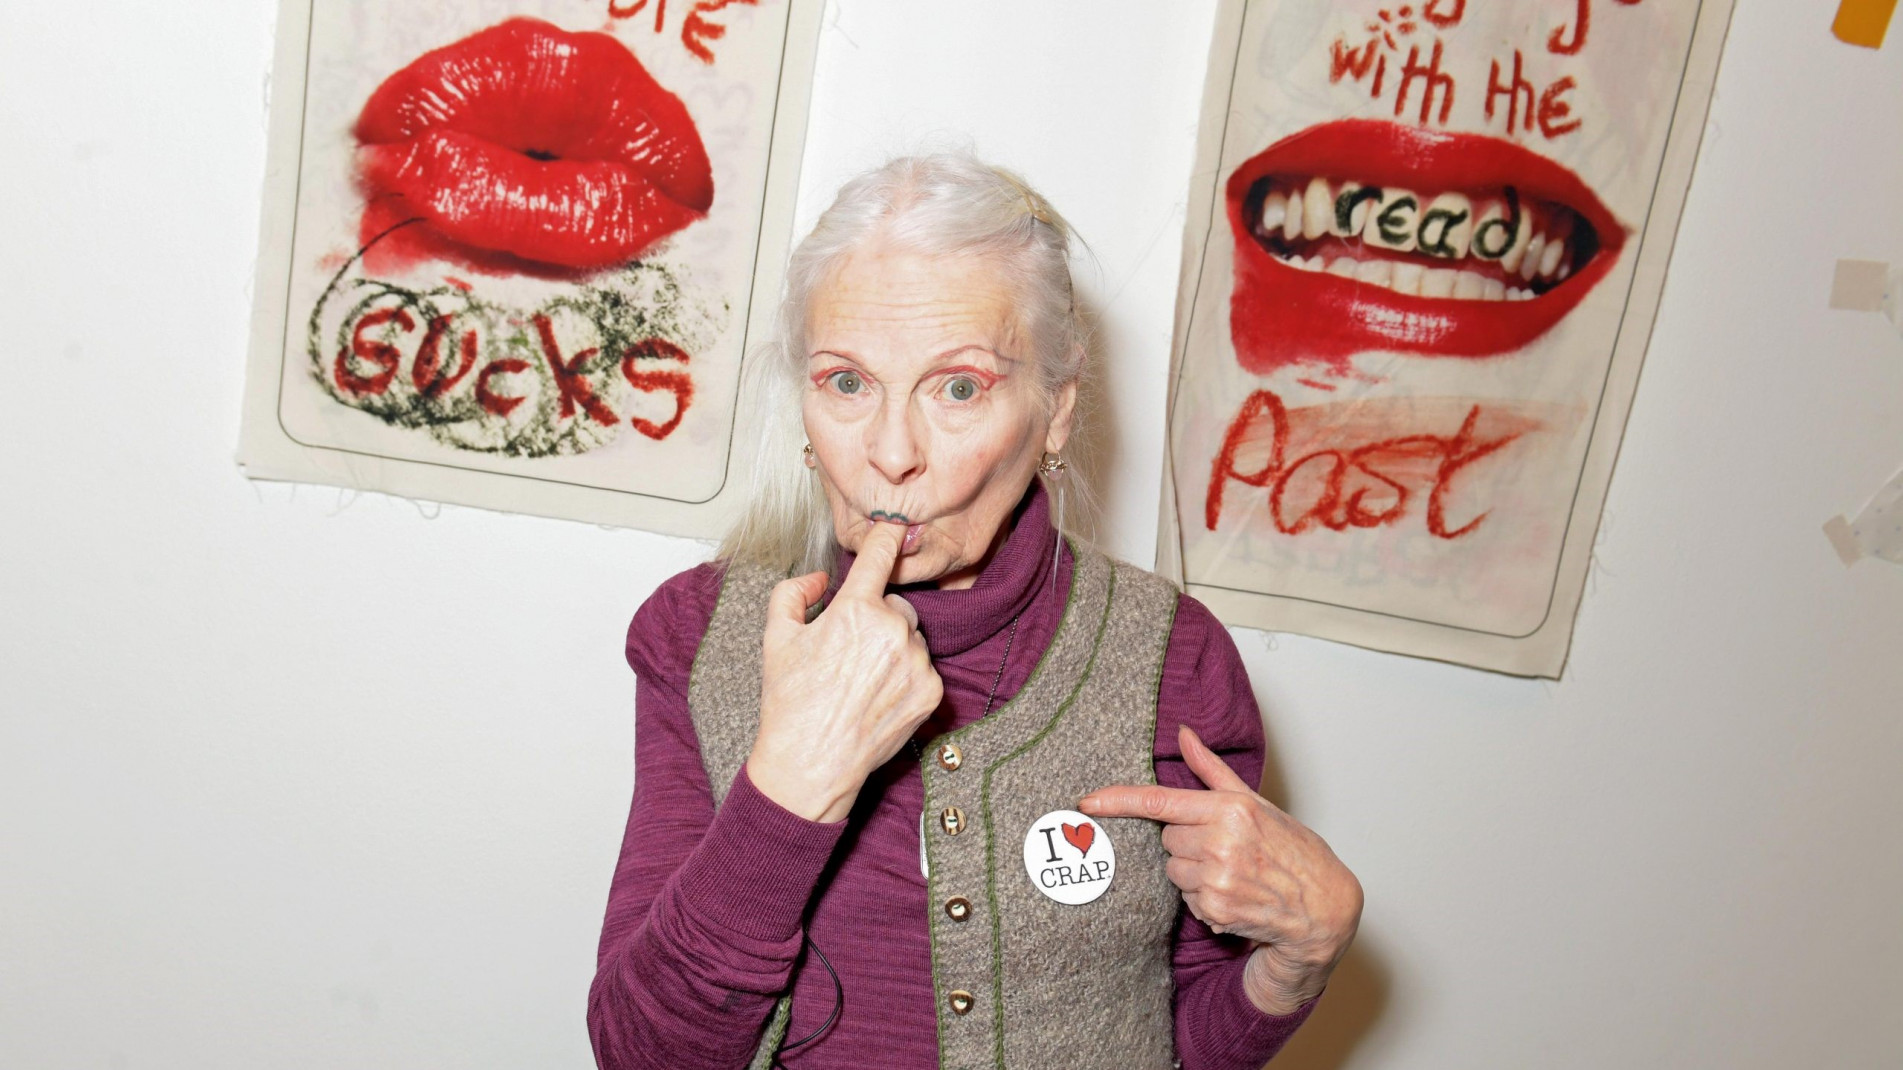 Do punk ao ativismo: conheça a história de Vivienne Westwood